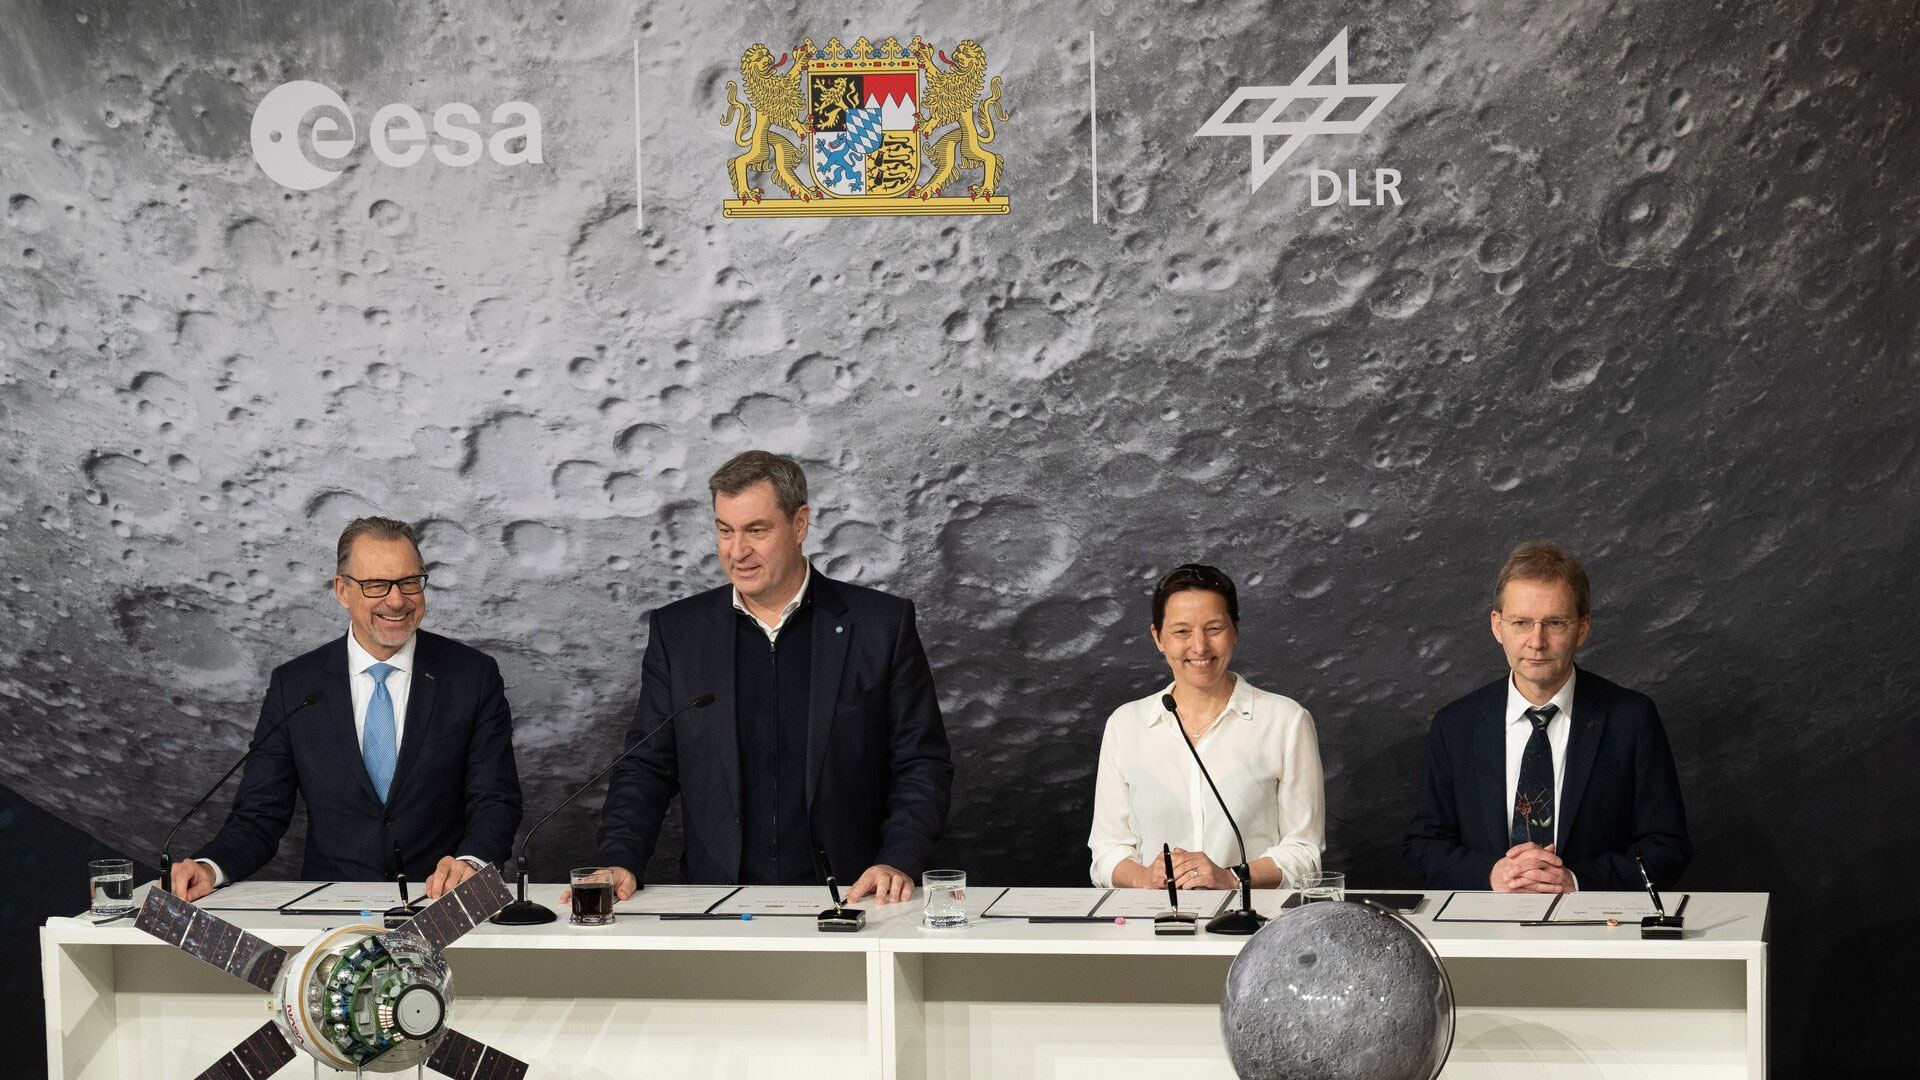 ESA und DLR vereinbaren den Bau eines Mondmissionskontrollzentrums